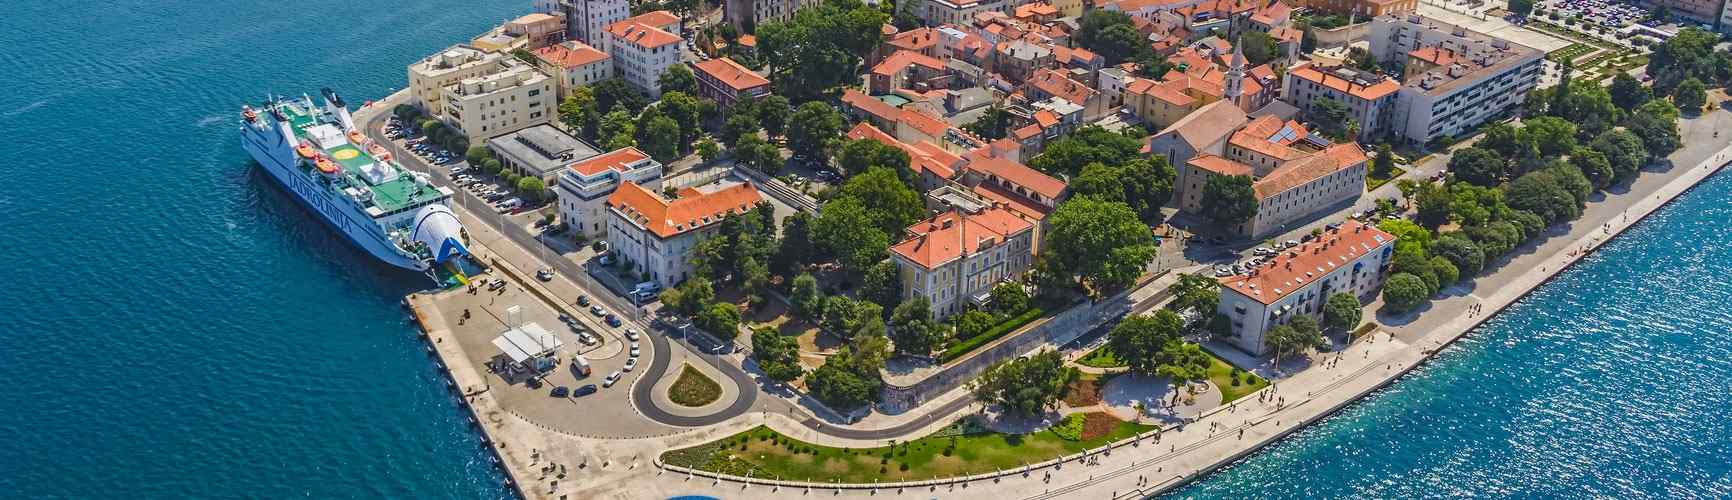 Zadar, Croatia: panoramic view